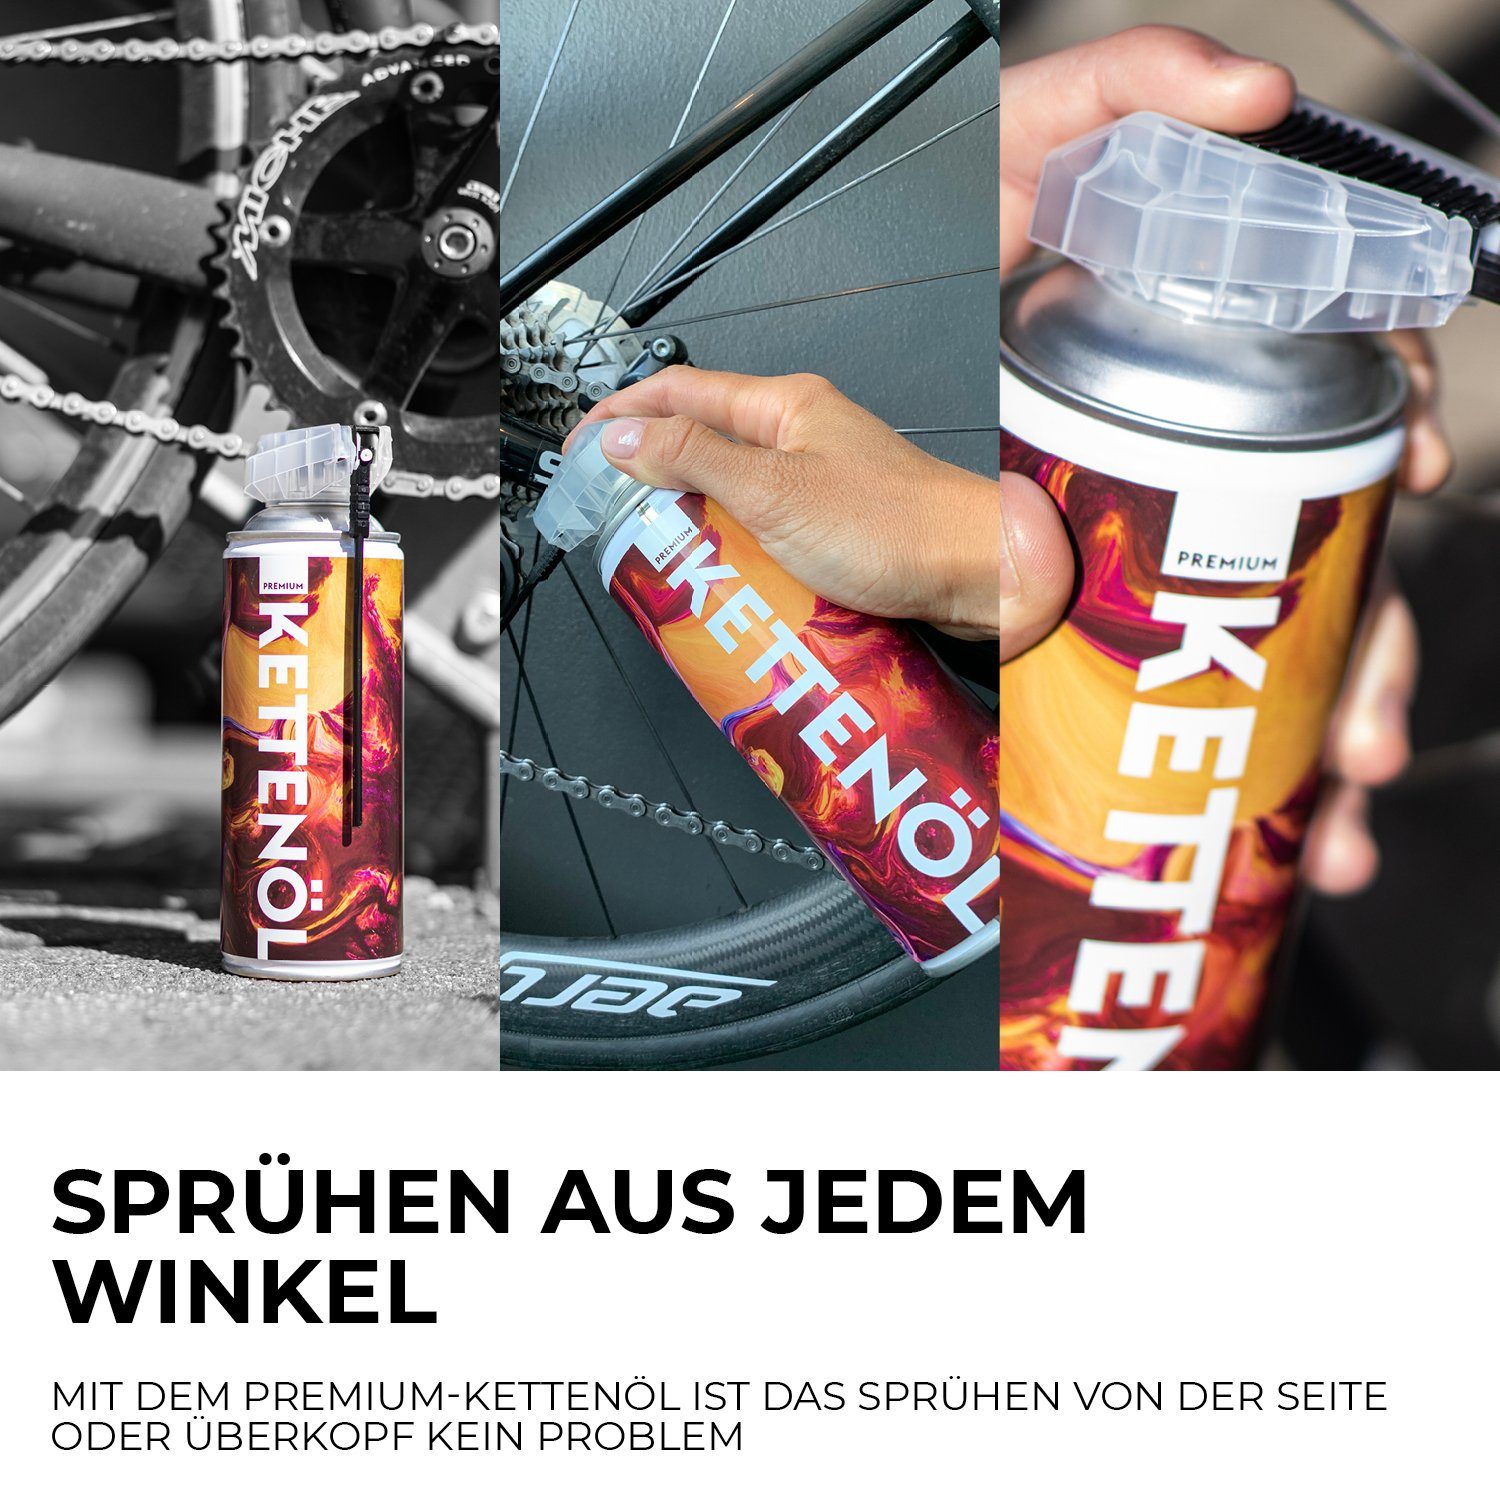 URBAN ZWEIRAD Fahrradketten PREMIUM ml, 400 Sprührohr Sprühdose Fahrrad Kettenöl wechselbaren mit